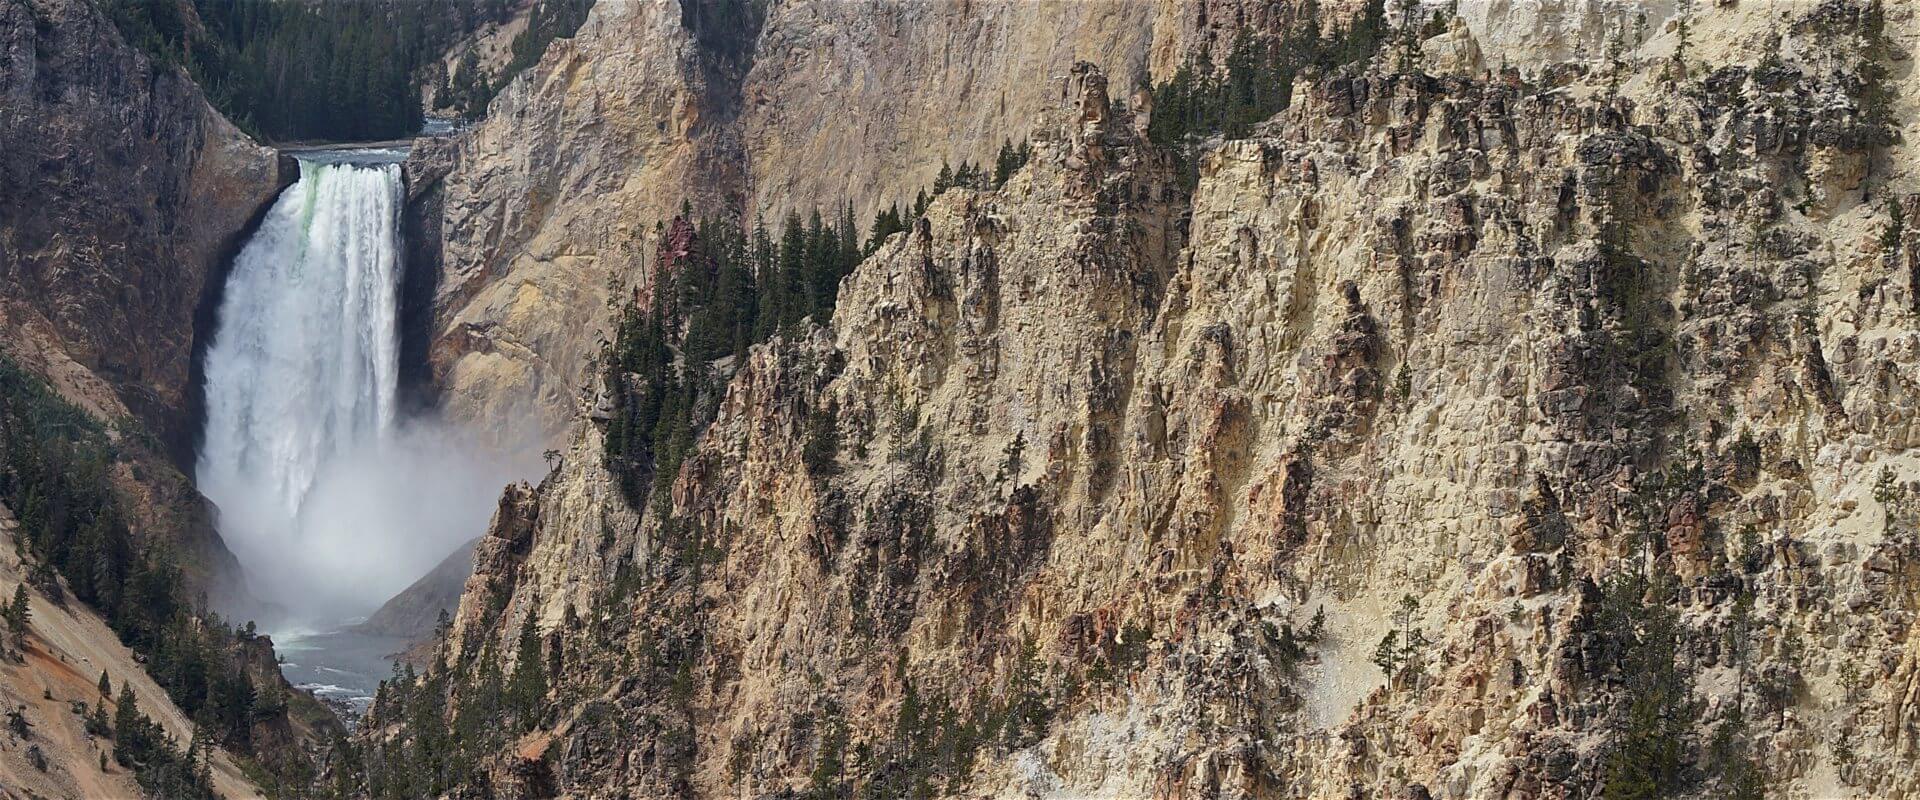 Steile Felswände und tosendes Wasser am Grand Canyon of Yellowstone